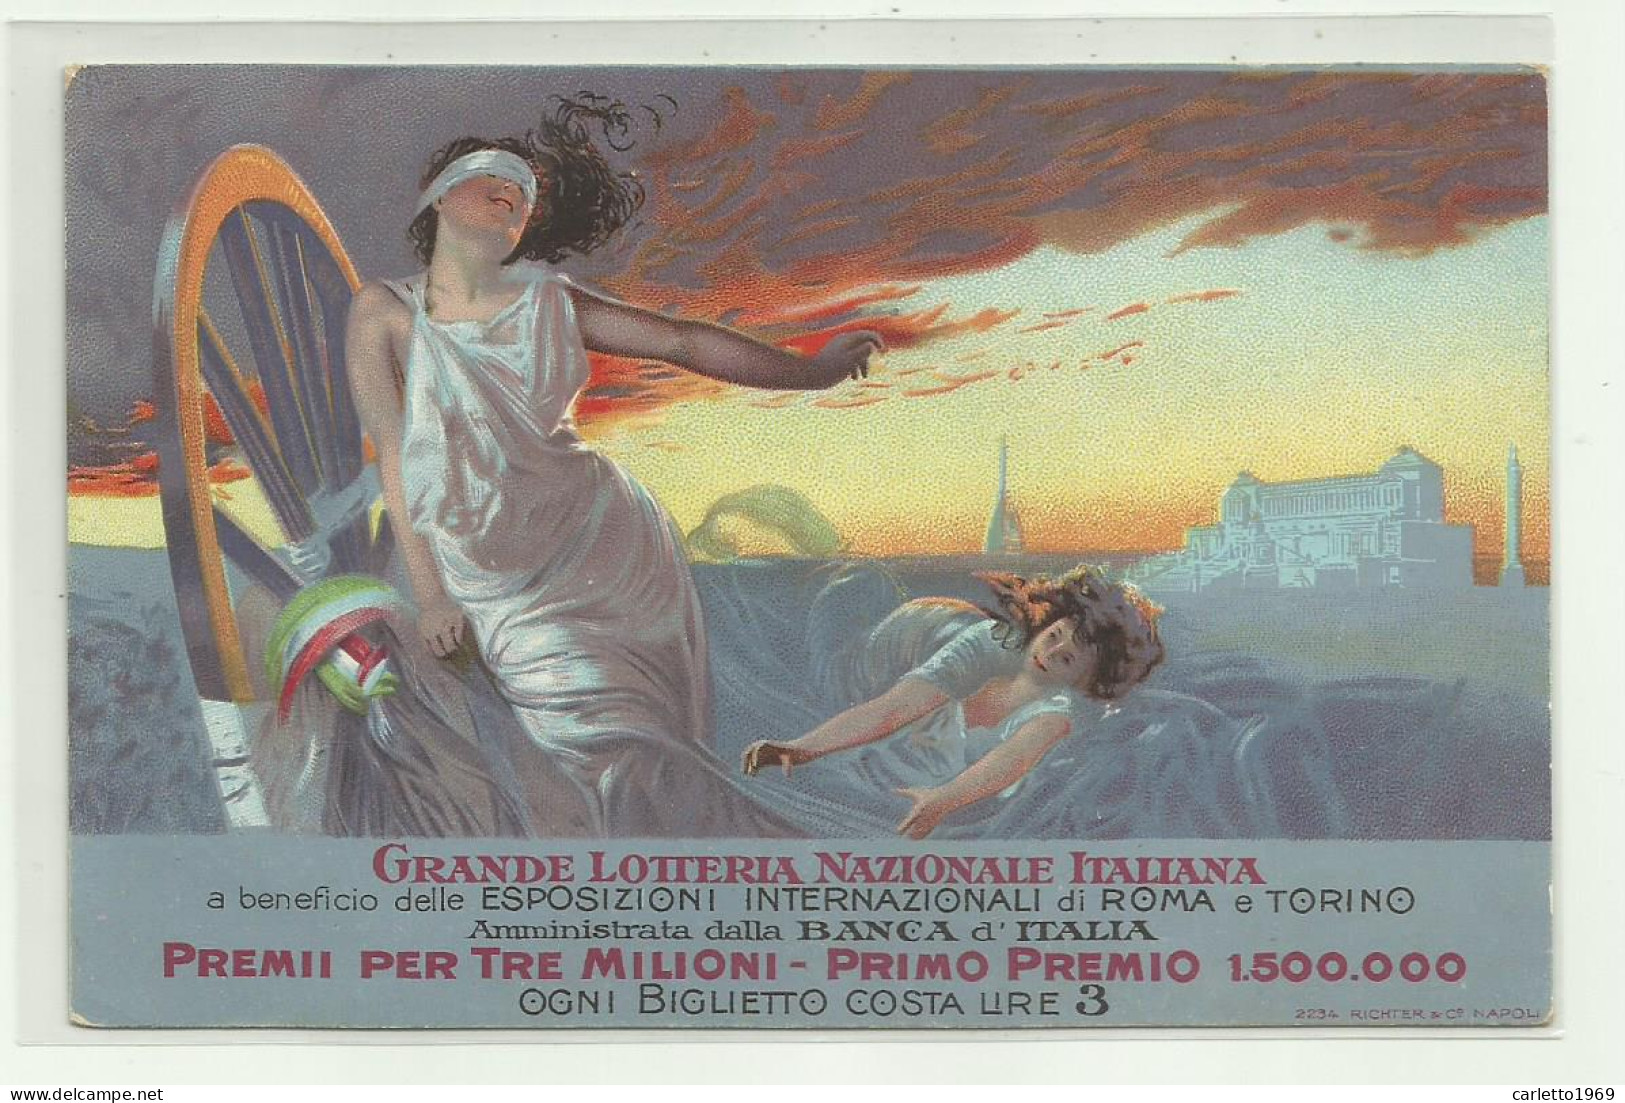 GRANDE LOTTERIA NAZIONALE ITALIANA A BENEFICIO DELLE ESPOSIZIONI INERN. DI ROMA E TORINO  - NV FP - Exhibitions